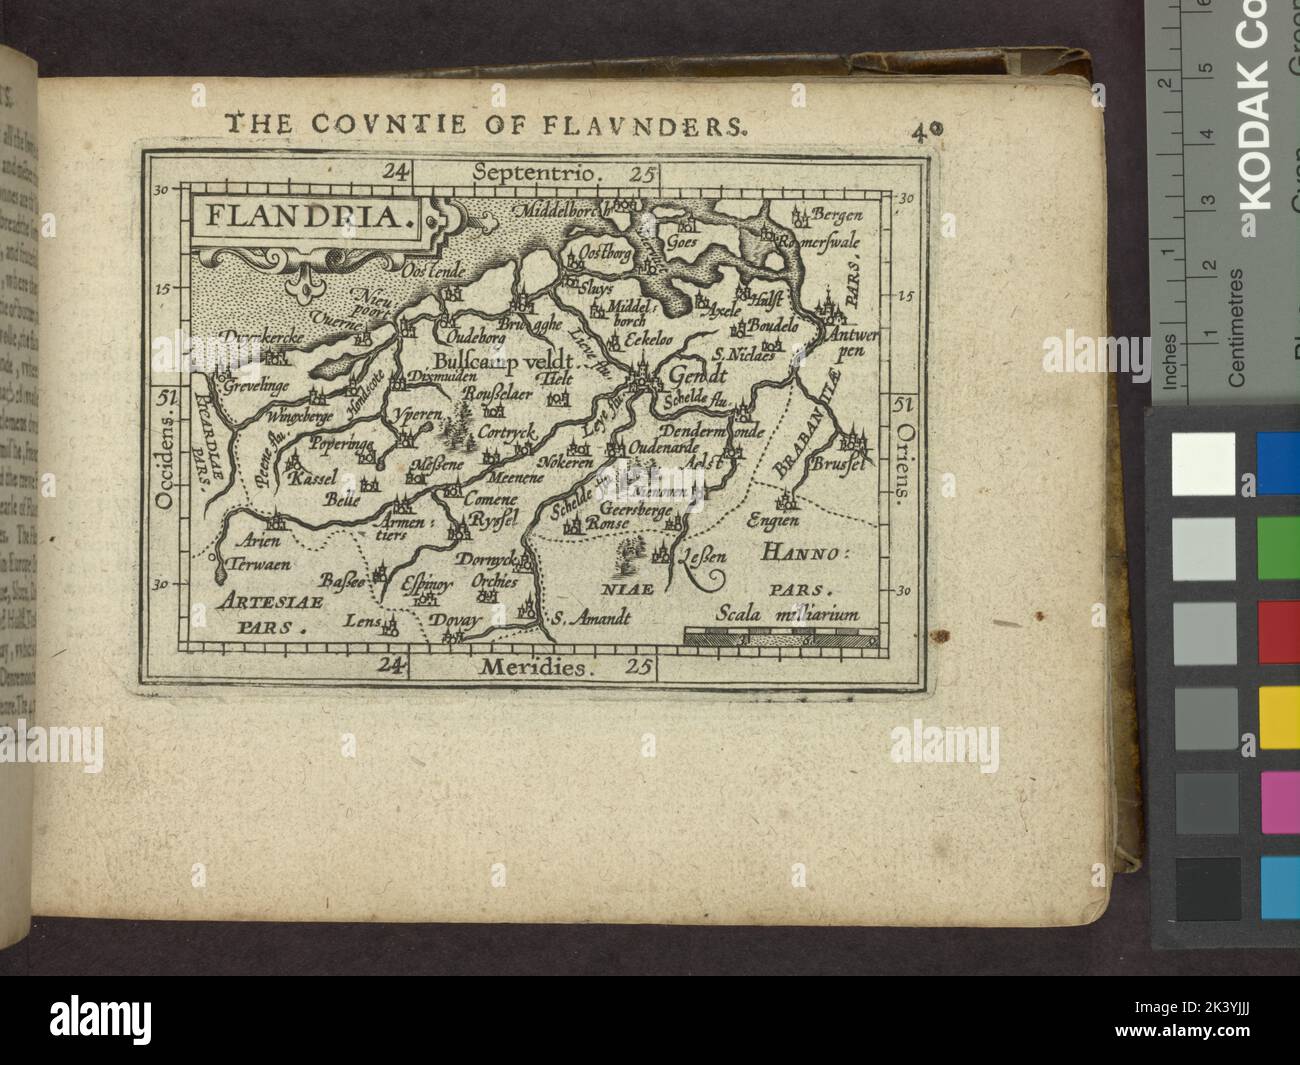 Flandria. La Countie of Flaunders. Cartográfico. Mapas, Atlas. 1603. División de mapas Lionel Pincus y Princesa Firyal. Geografía, Flandes (Bélgica) Foto de stock